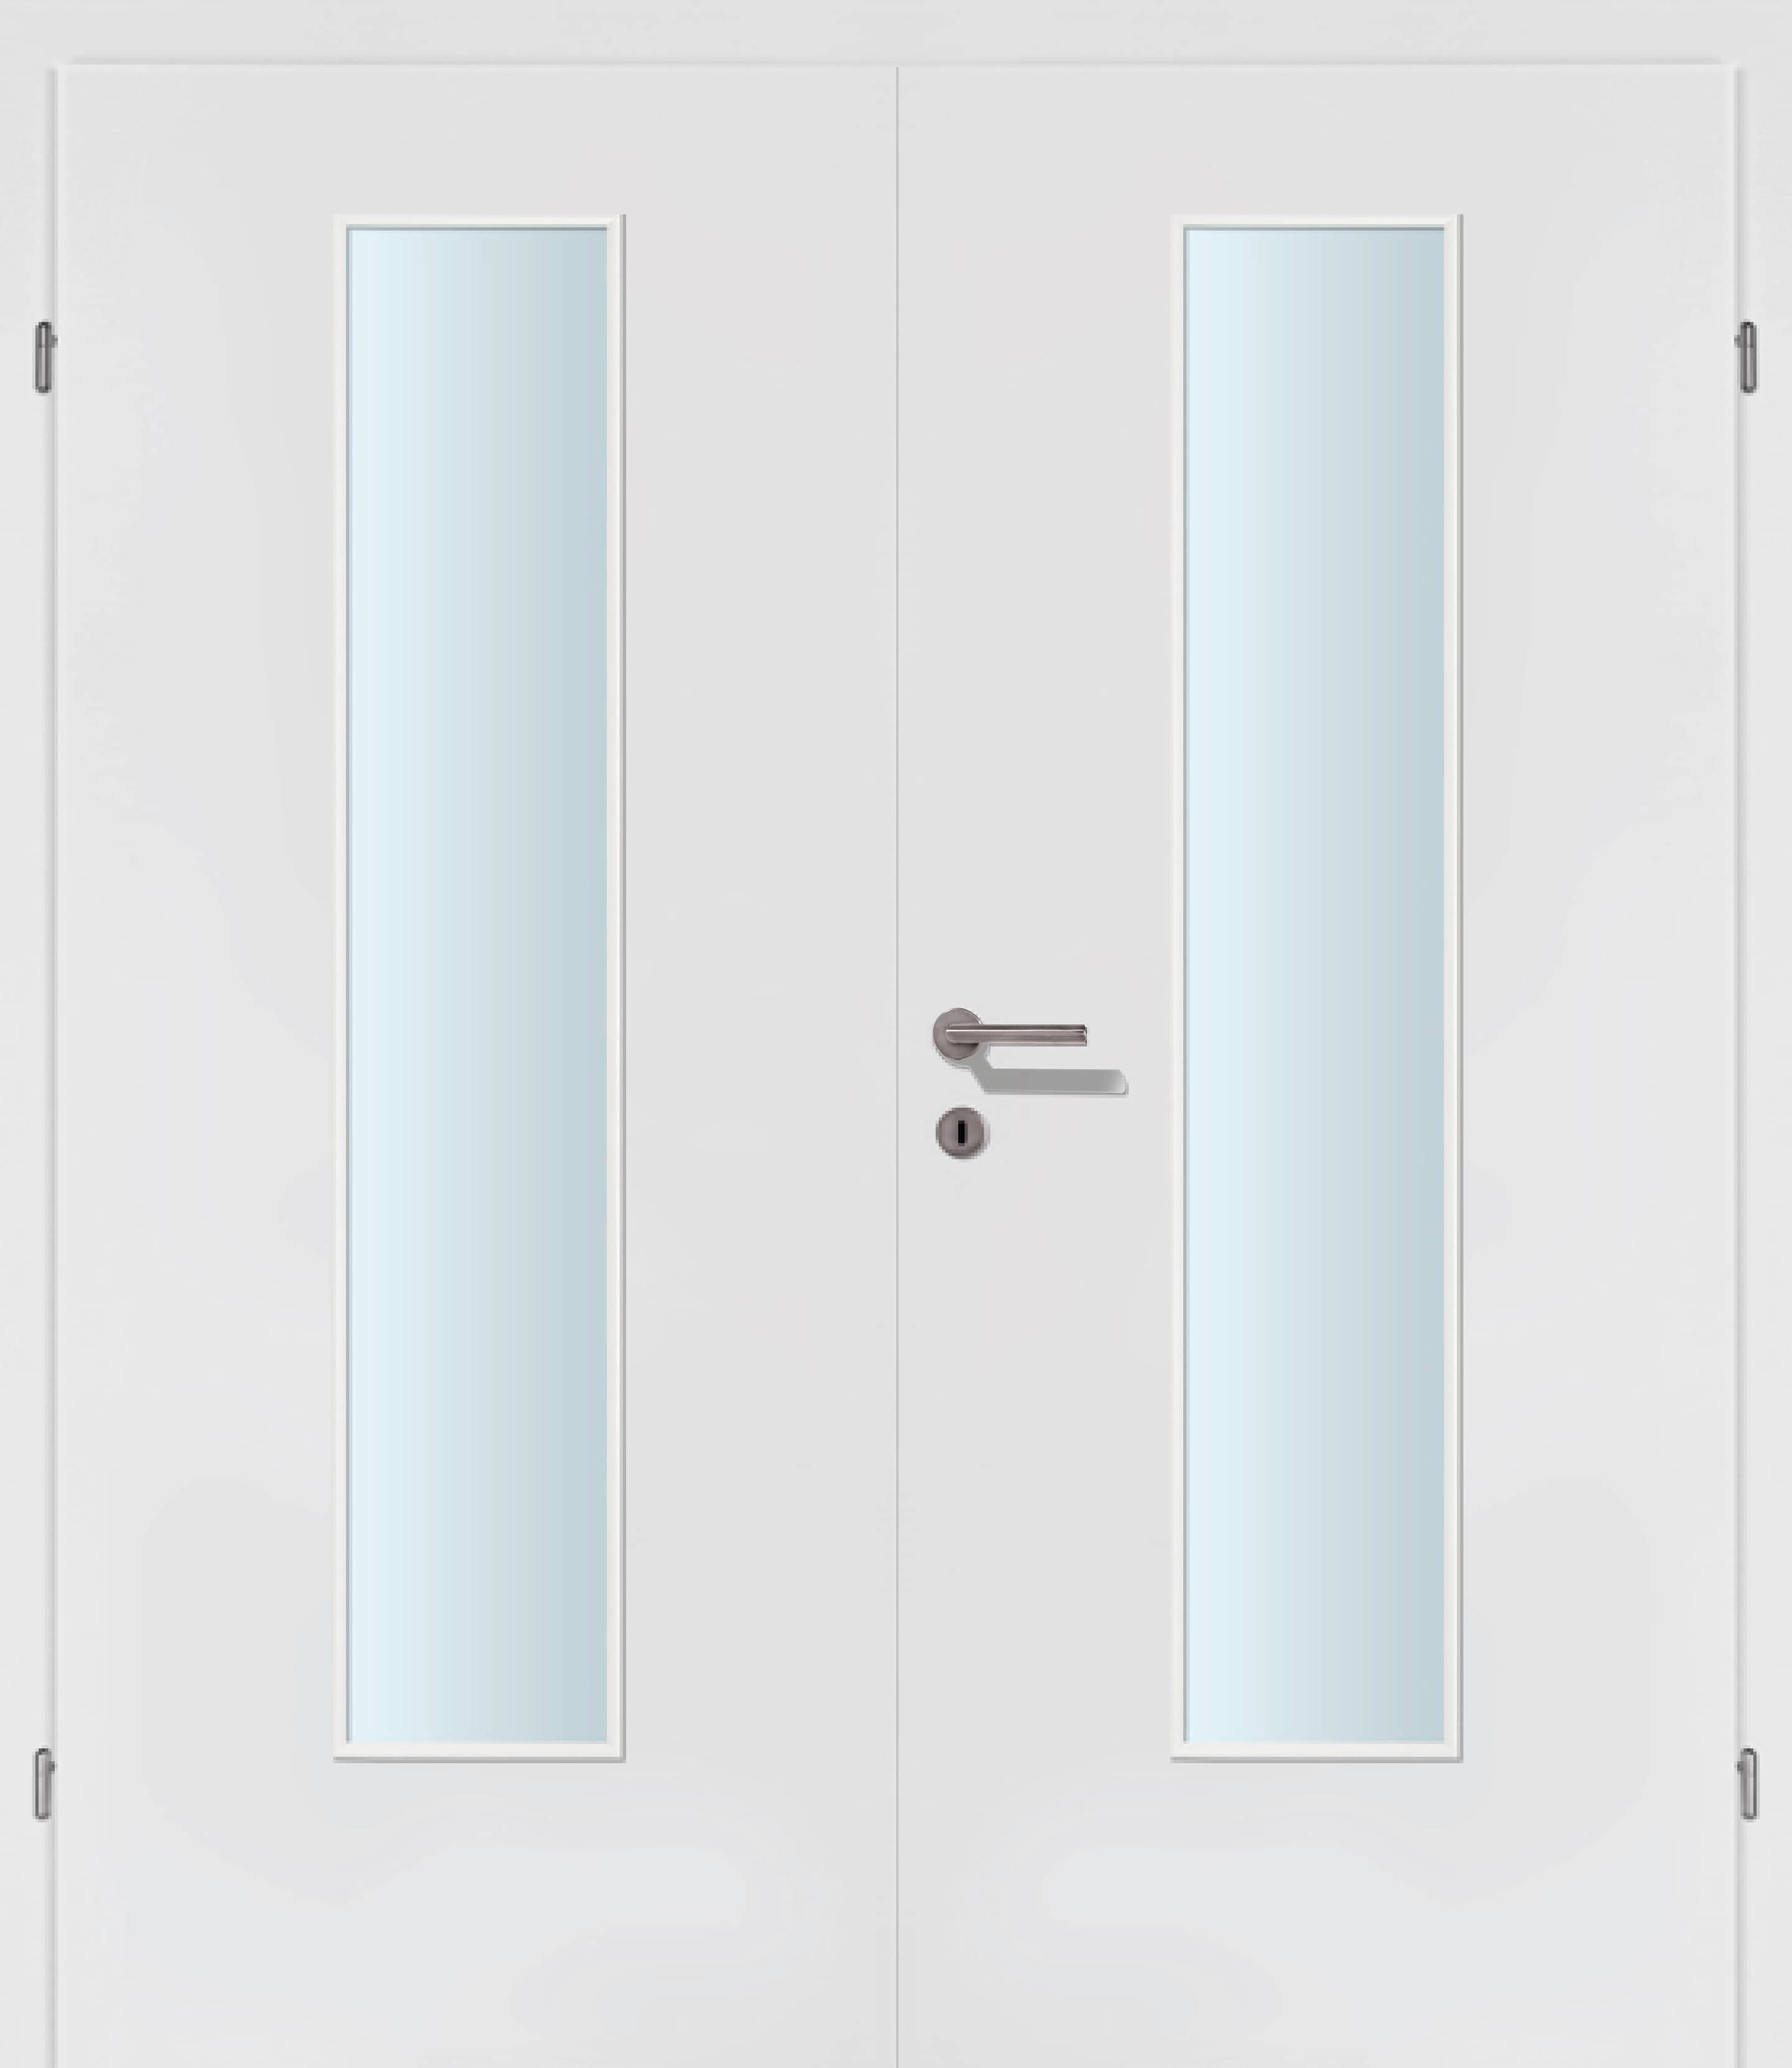 Exklusiv weiss Innentür Inkl. Zarge (Türrahmen) Doppeltüre Inkl. Glaslichte EN Mittig